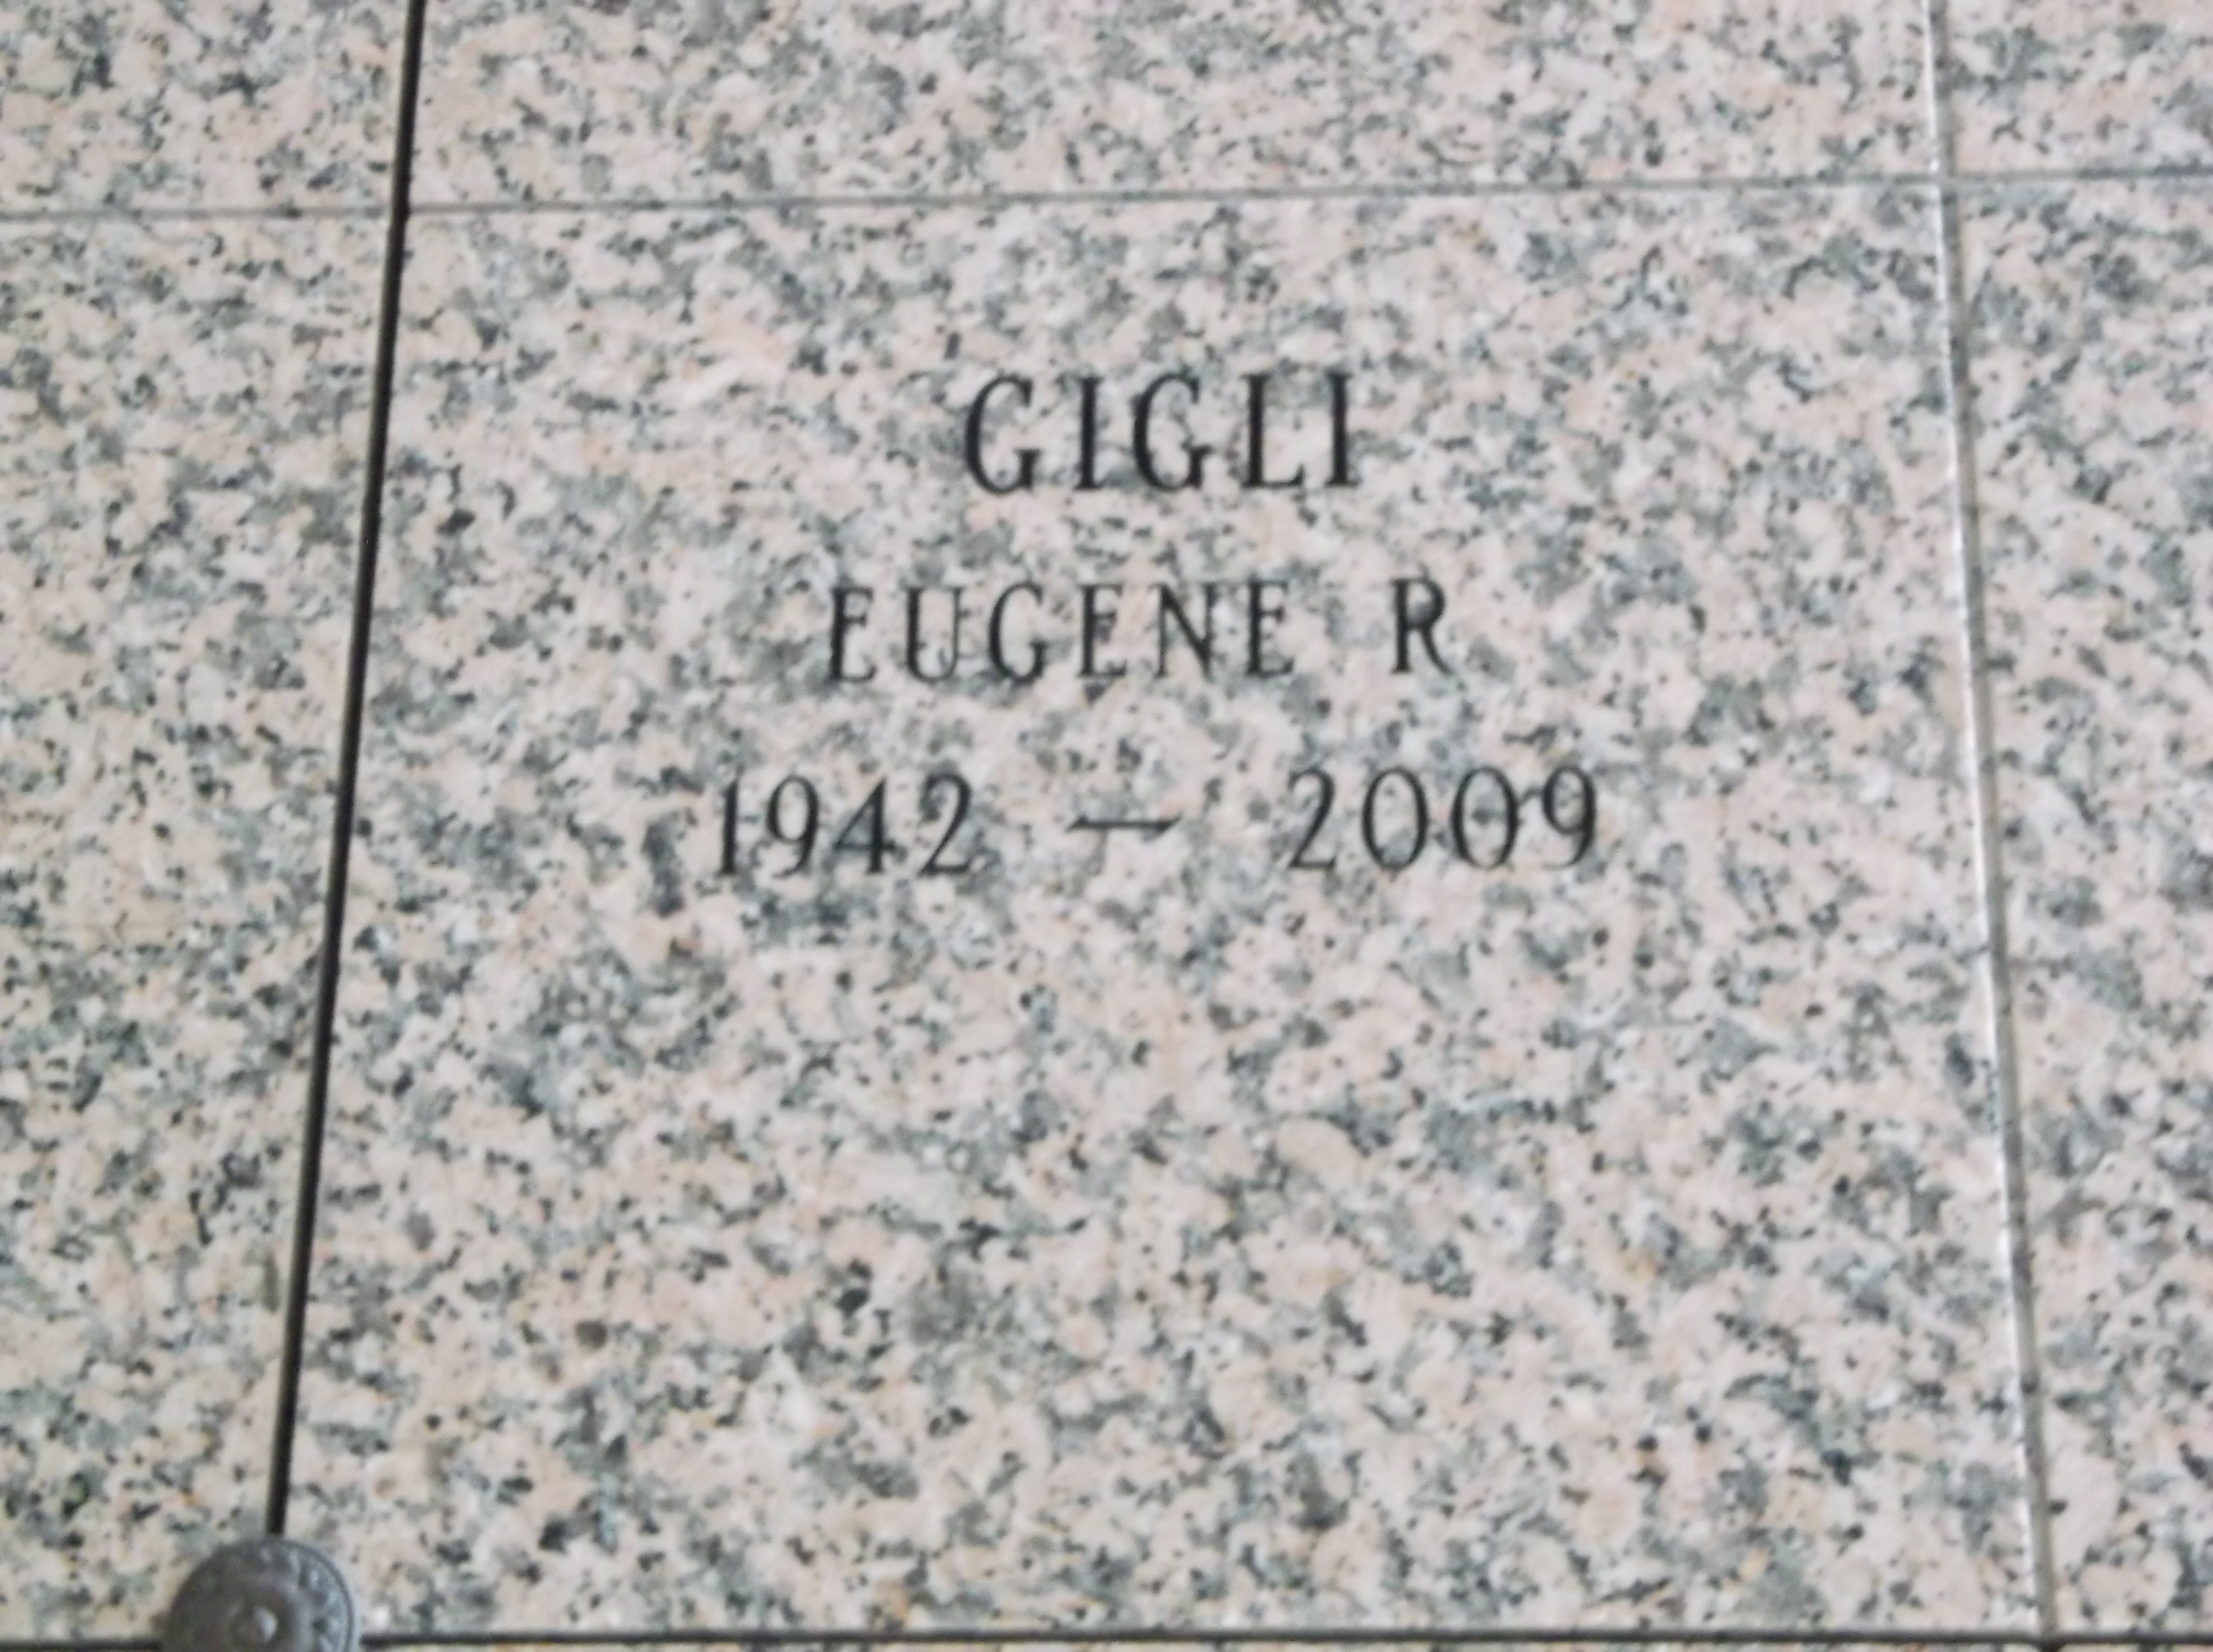 Eugene R Gigli